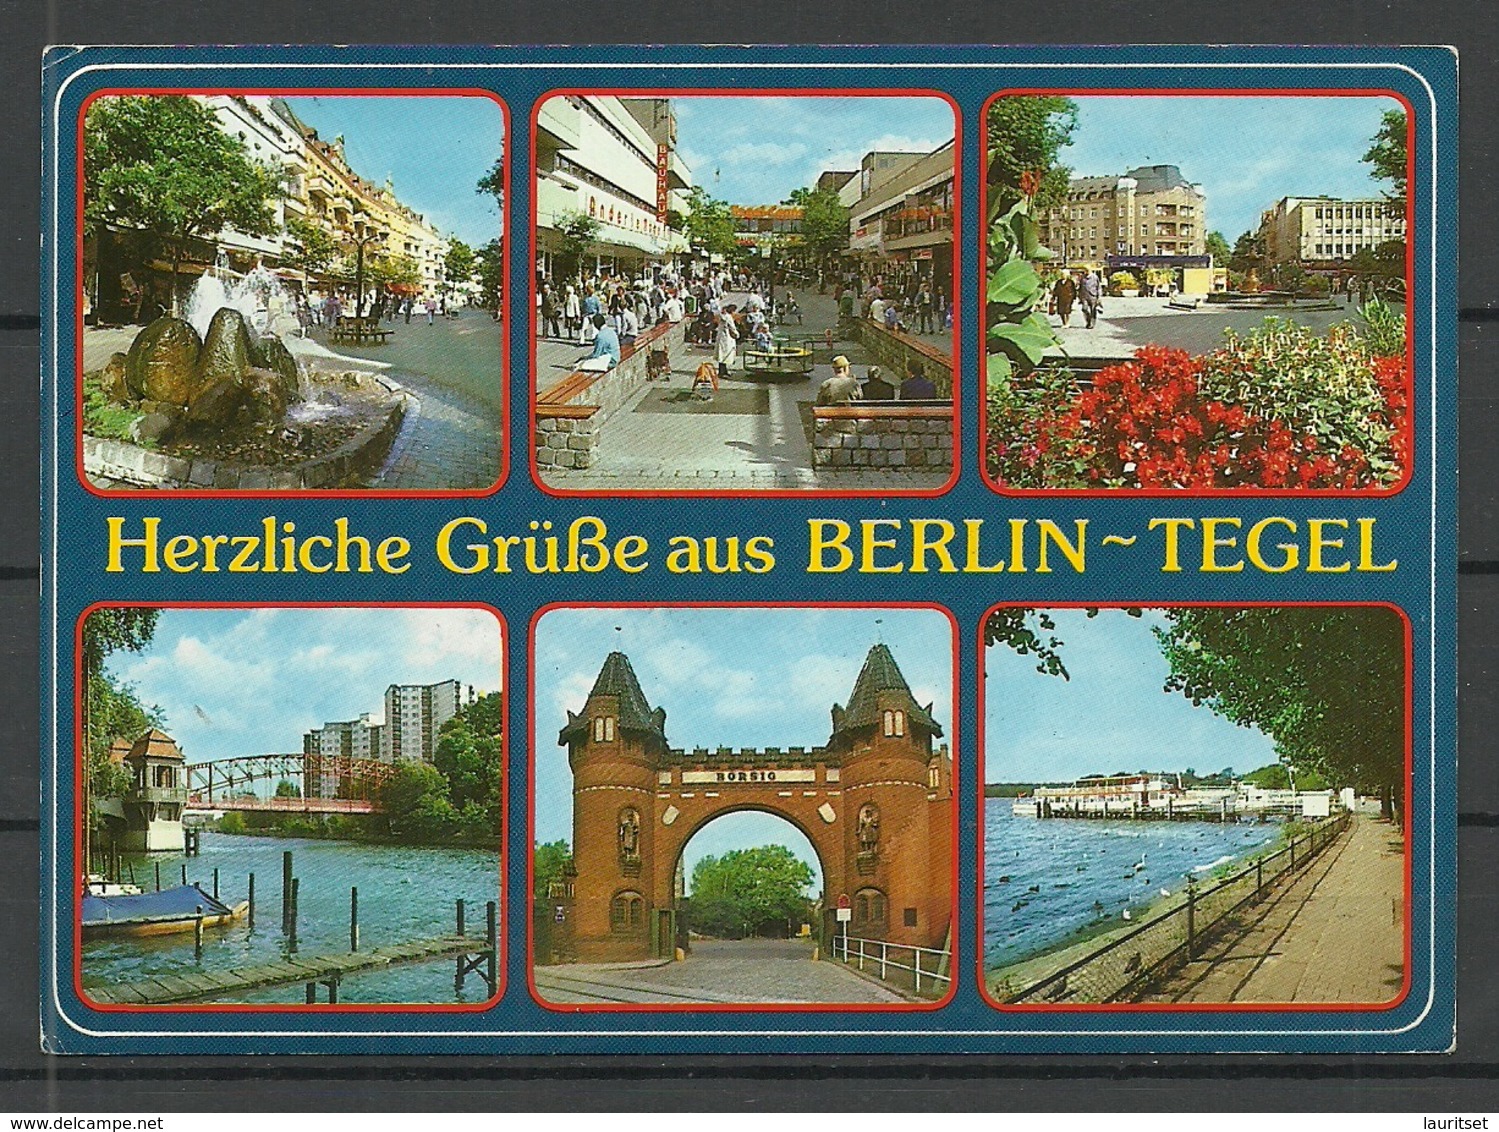 Deutschland 1990 Berlin Tegel , Gesendet, Mit Briefmarke - Tegel